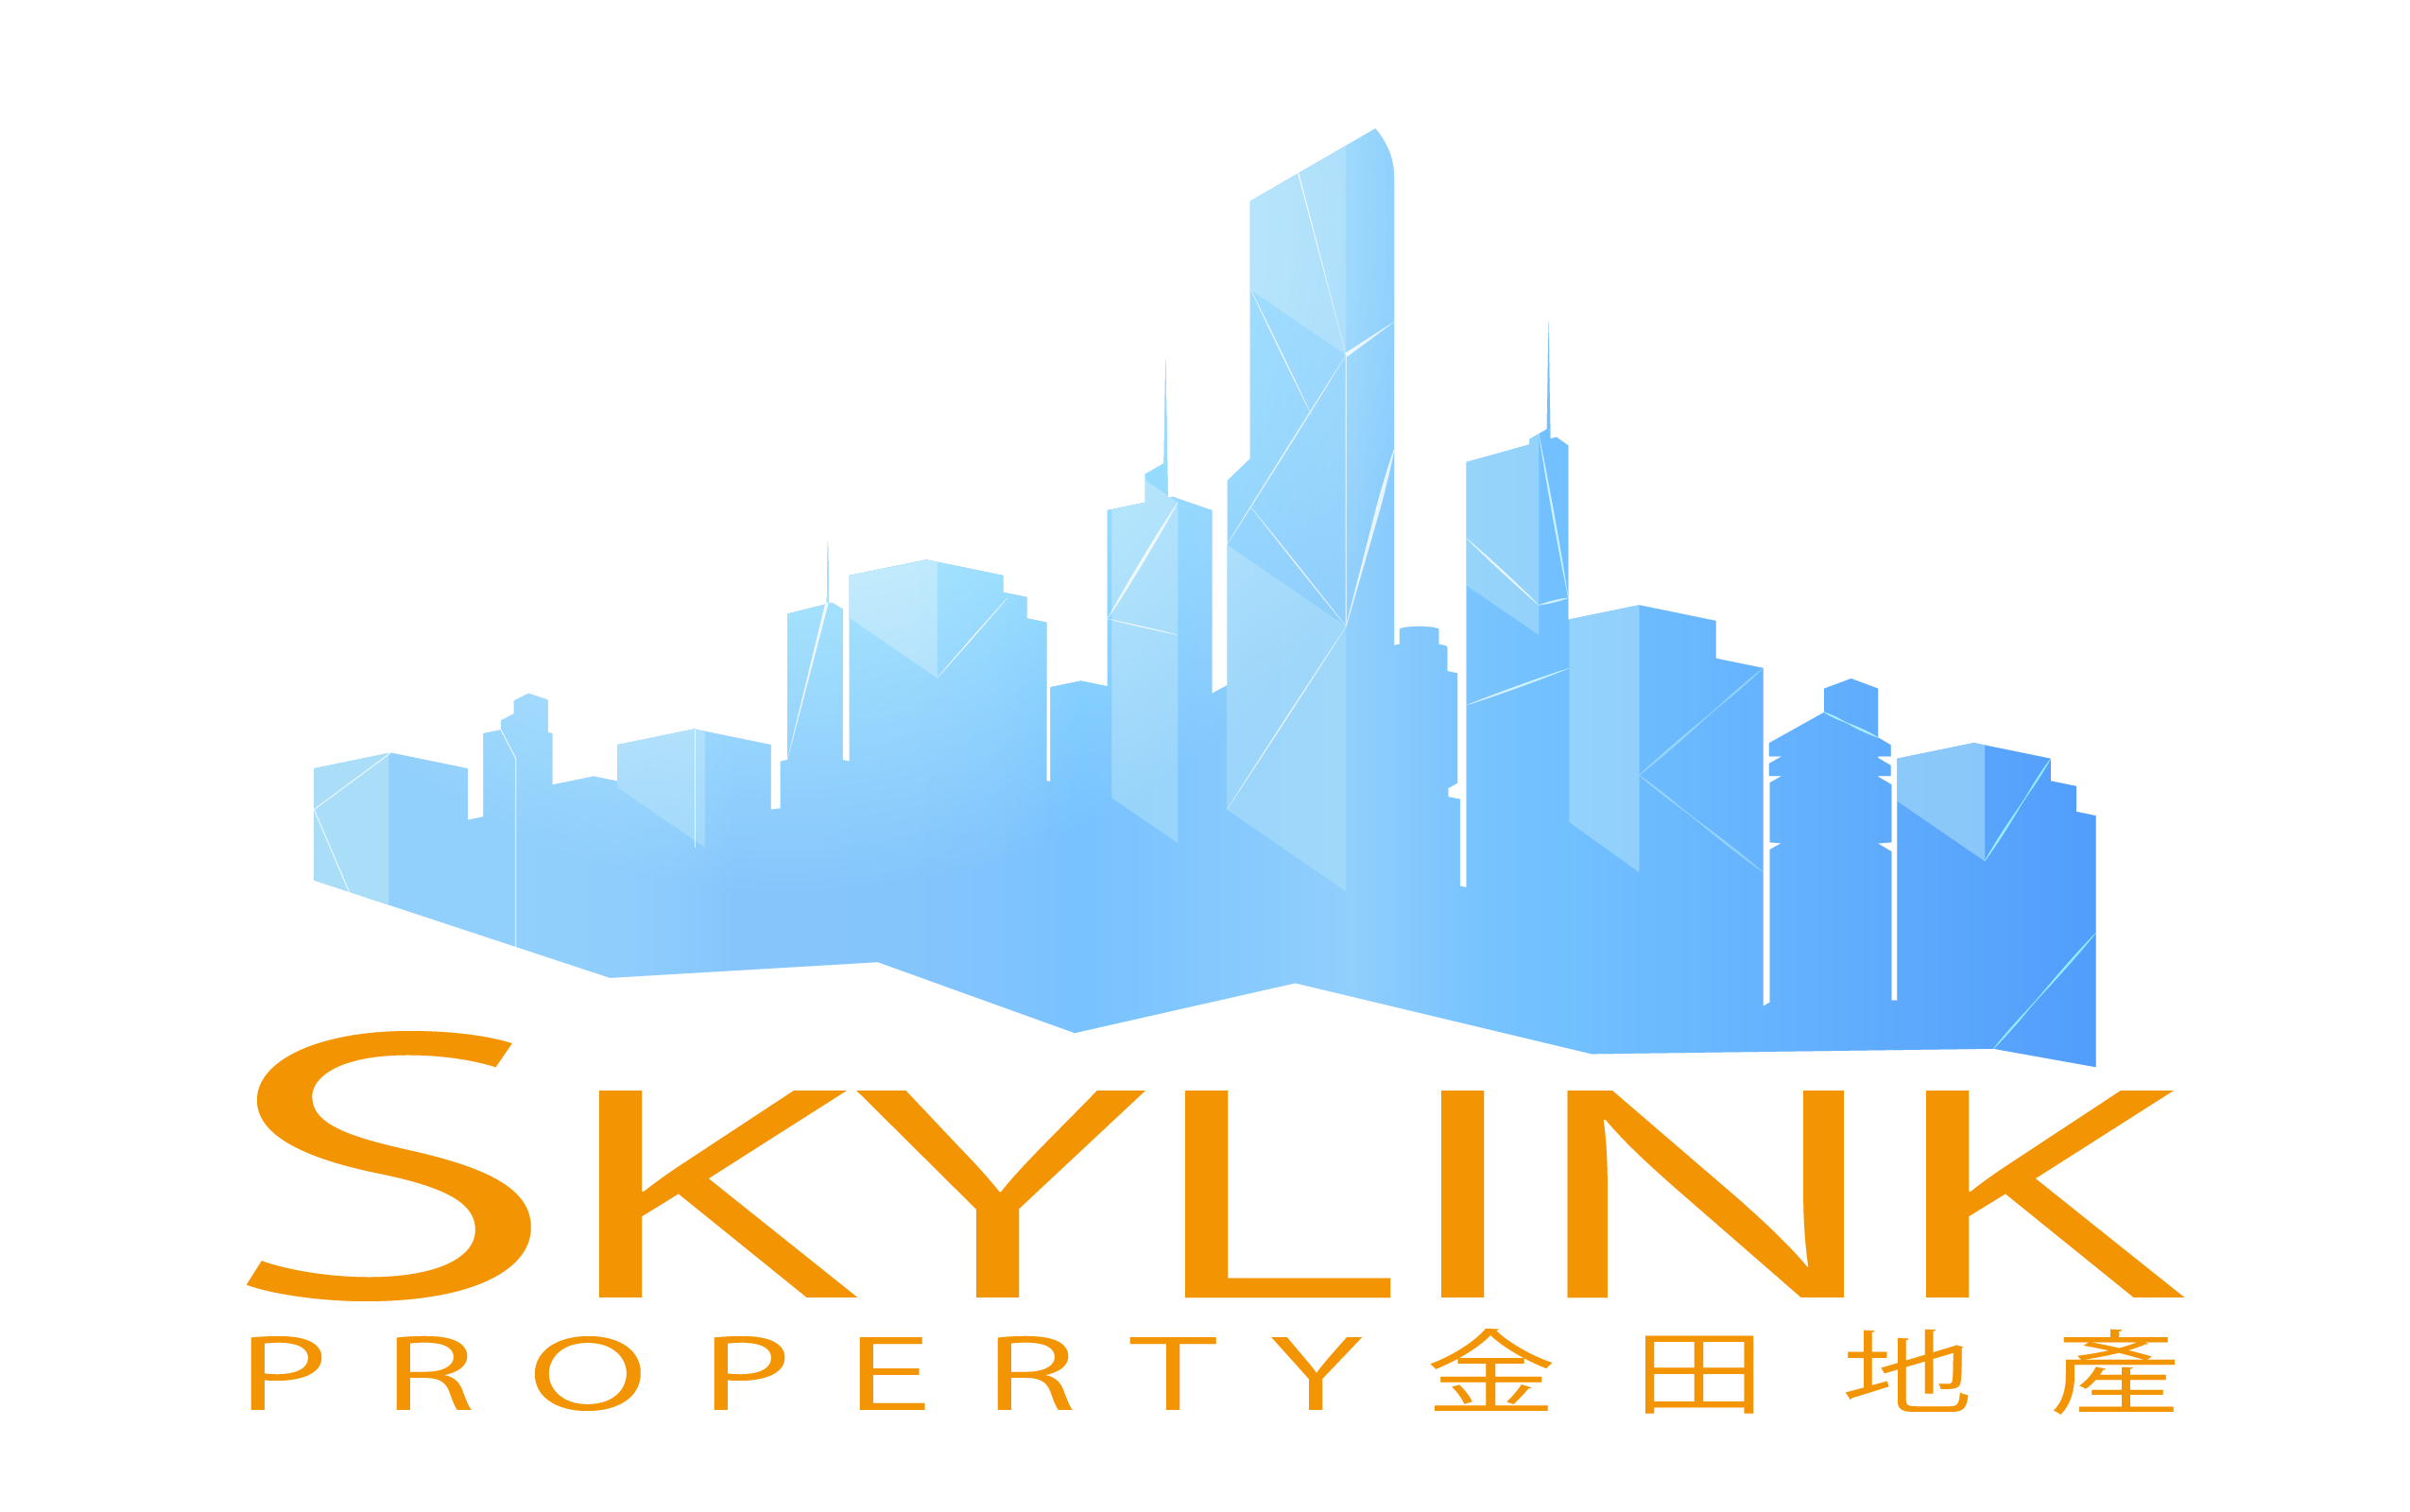 Skylink Property Pty Ltd